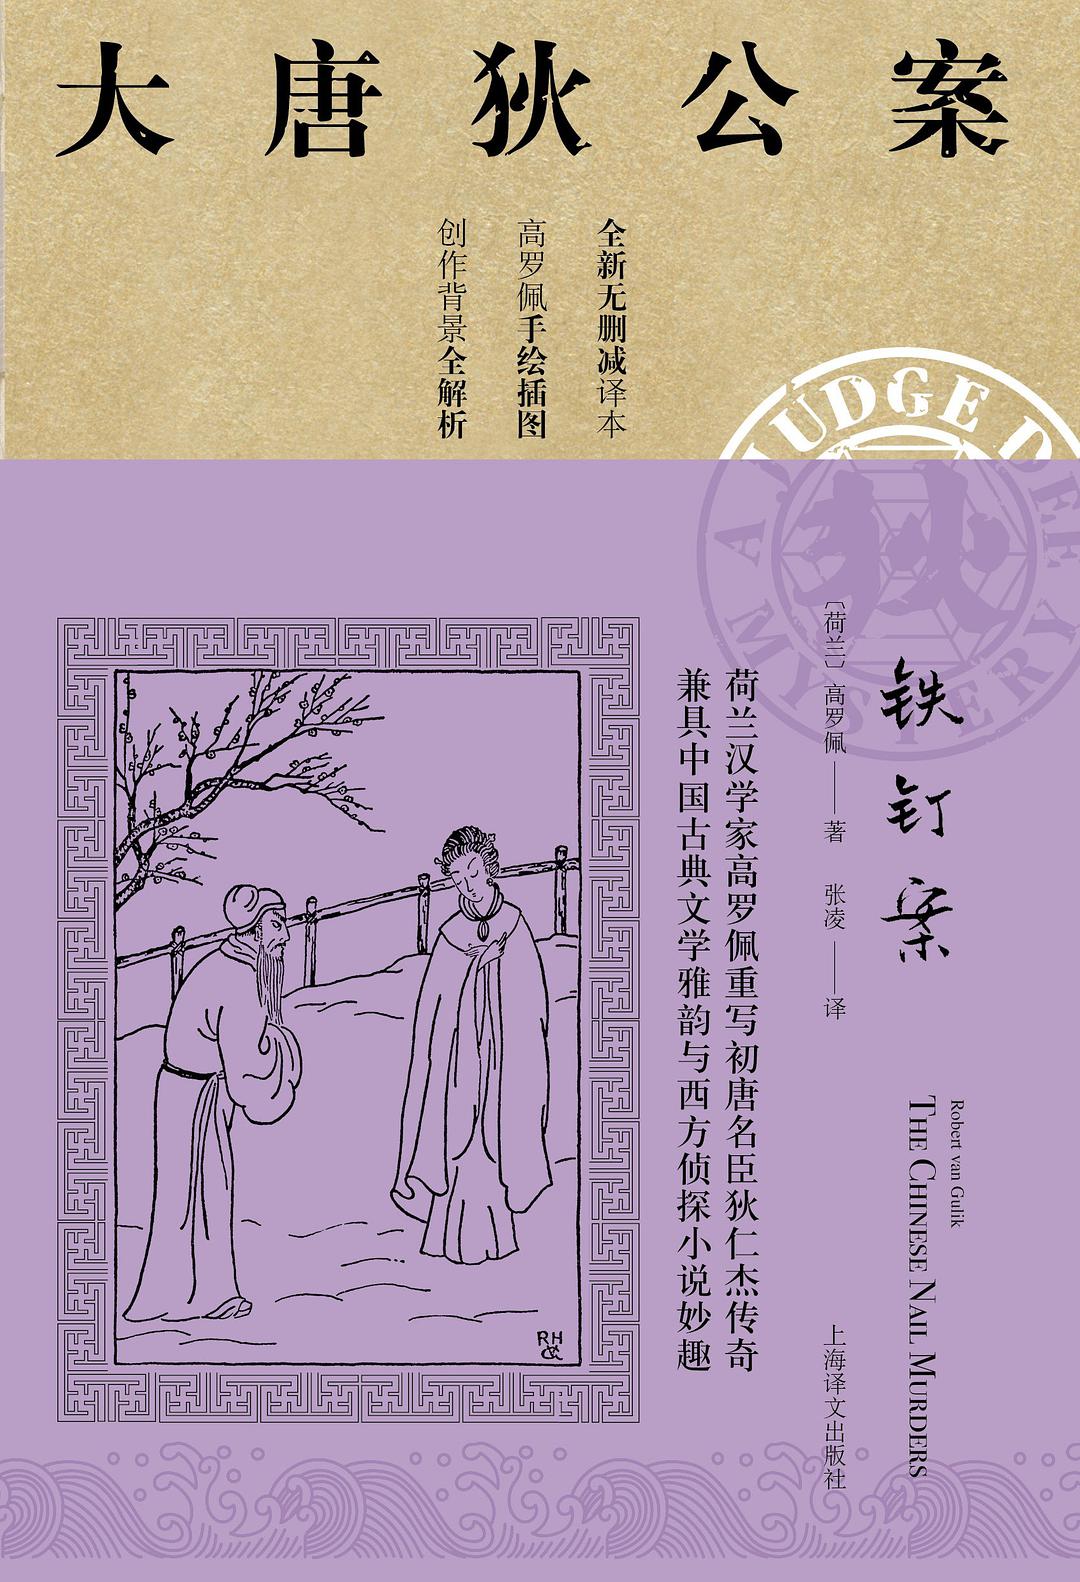 铁钉案 (Chinese language, 2019, 上海译文出版社)